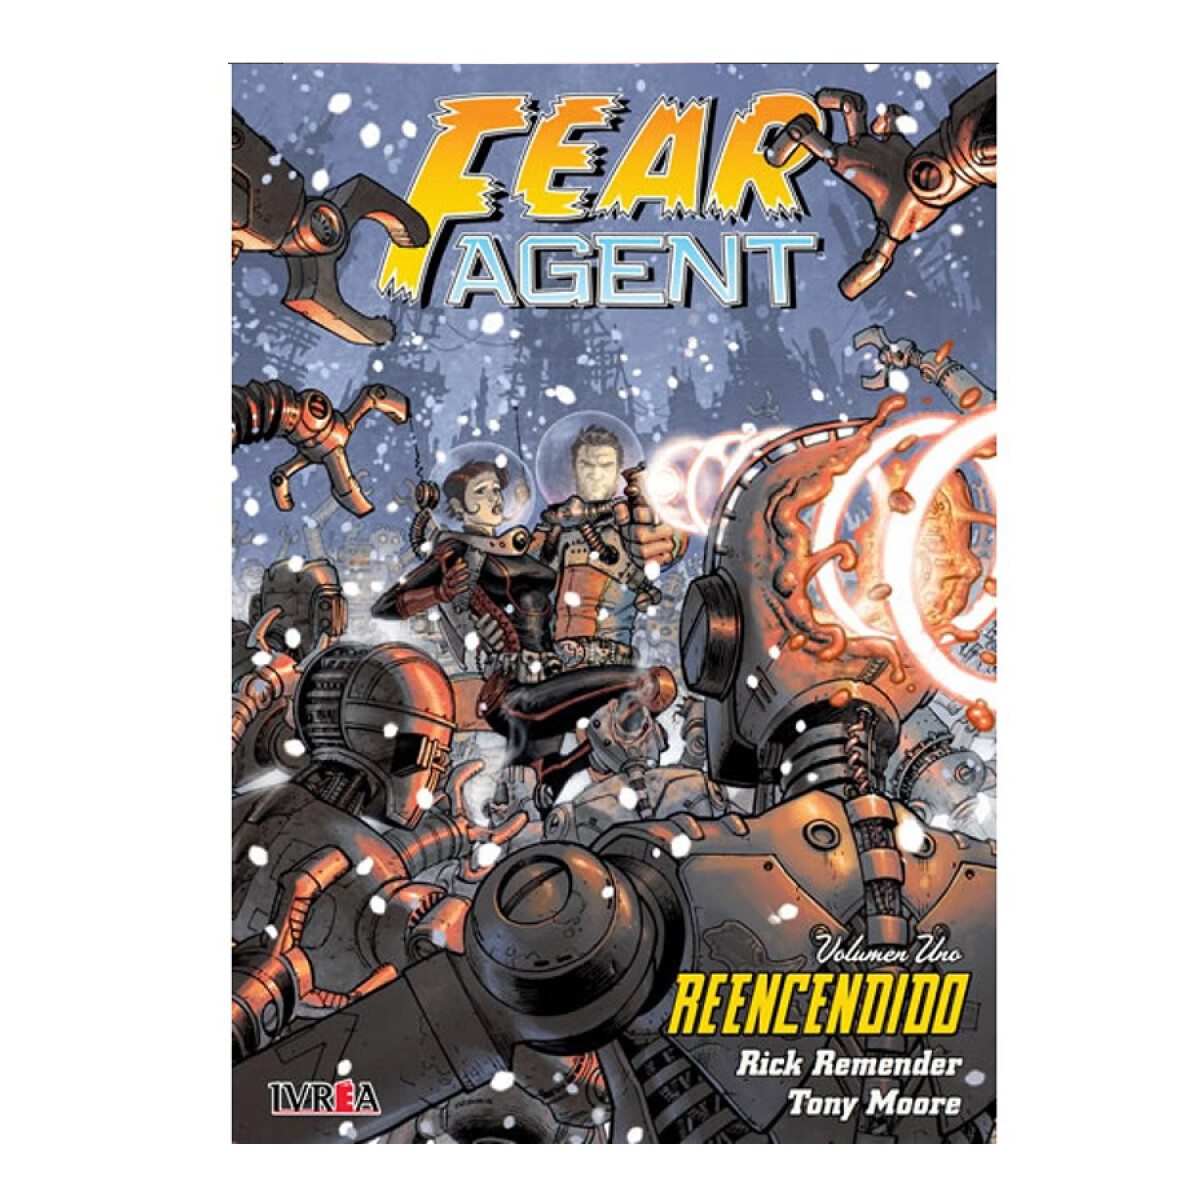 Fear Agent: Reencendido Vol. 1 